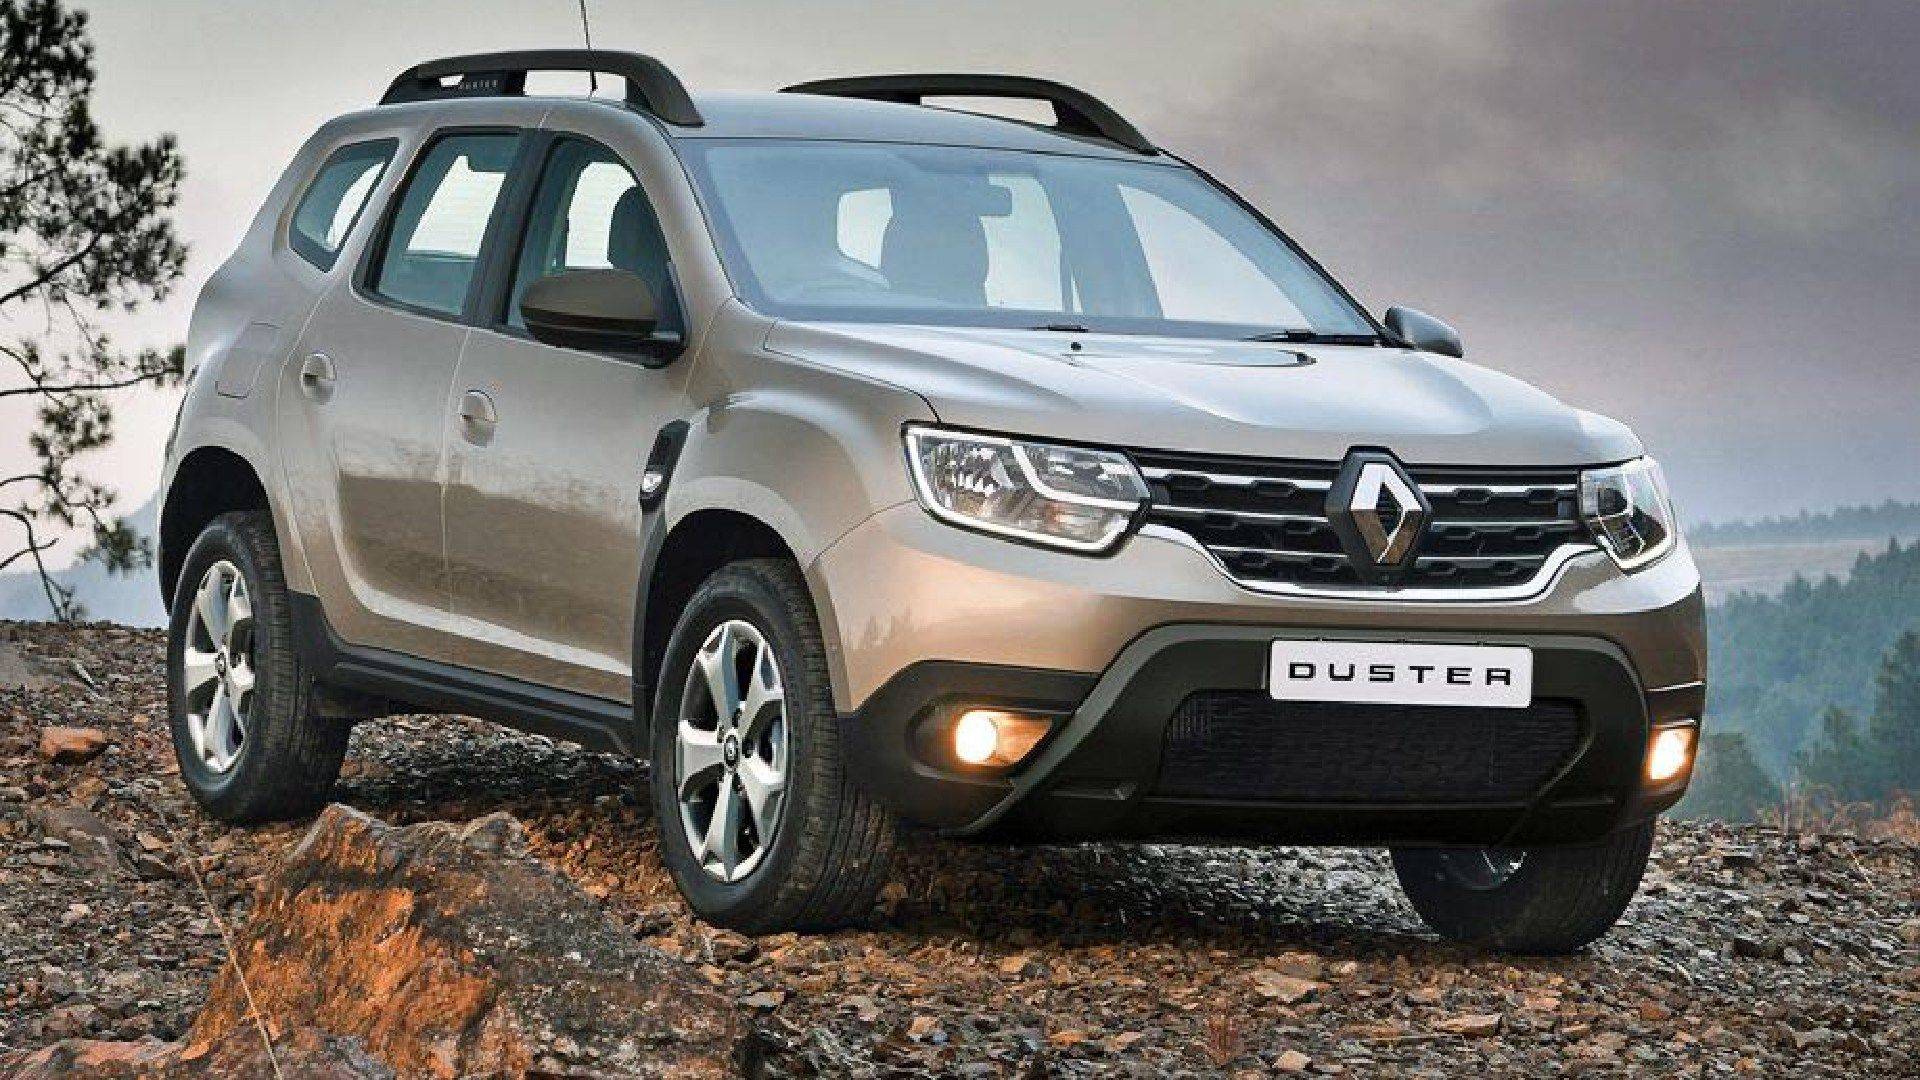 Renault duster 2017 (рено дастер дизель) видео обзор и тест драйв | ремонт авто - заказ запчастей